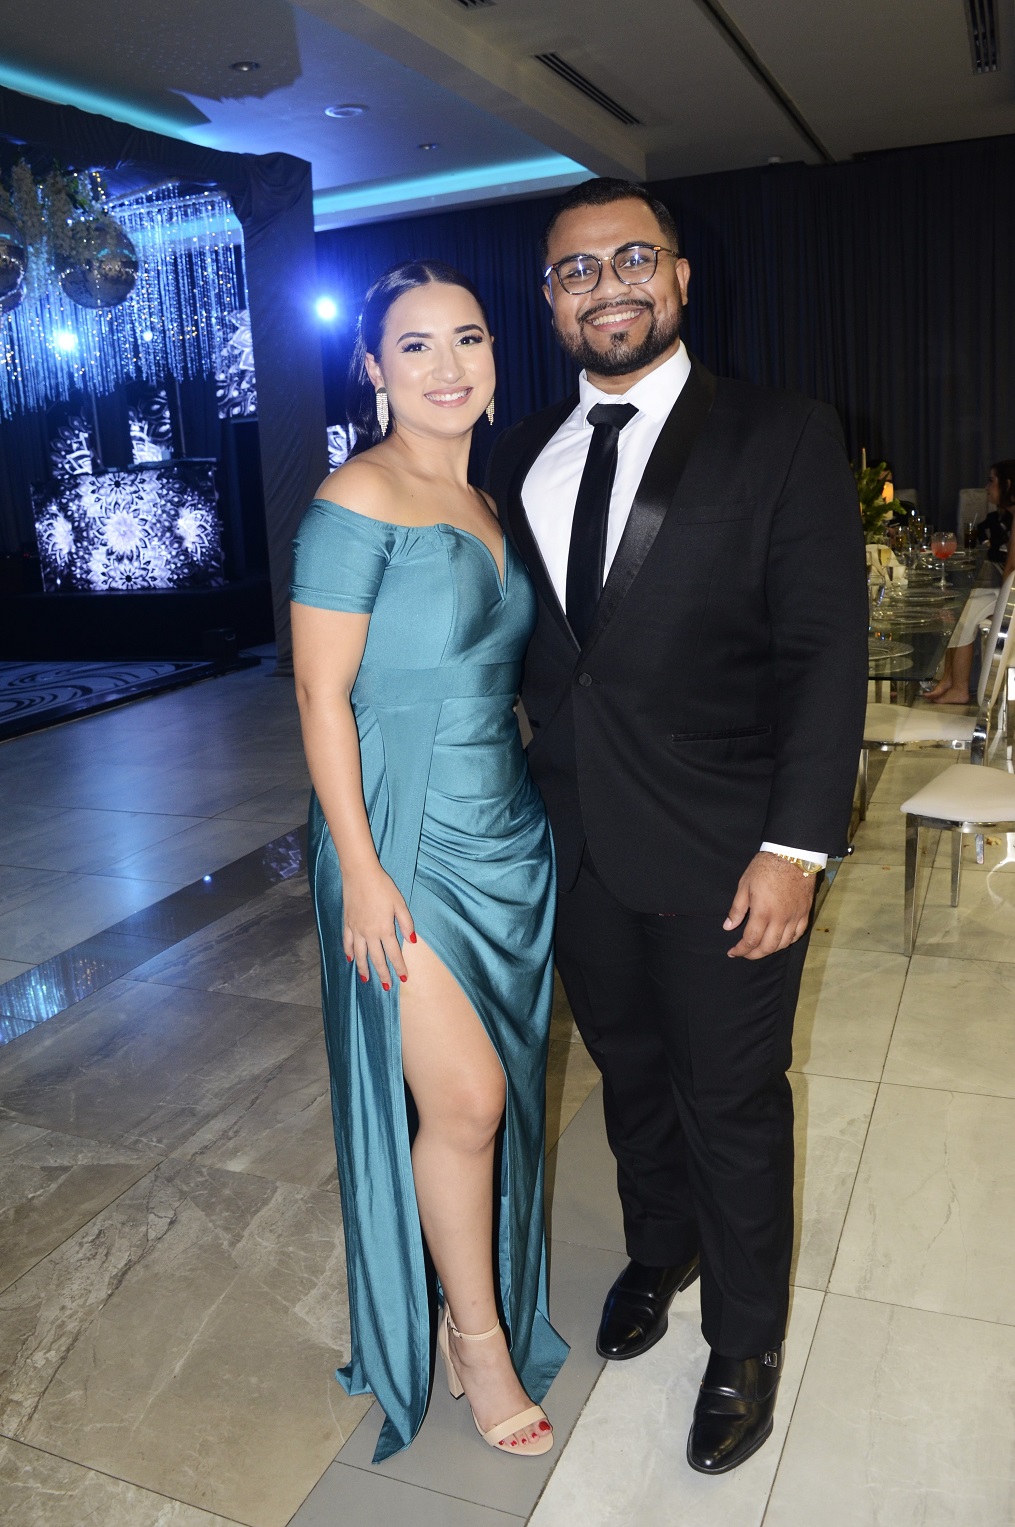 La boda de Carlos Meraz y Anahí Figueroa …una velada llena de encanto